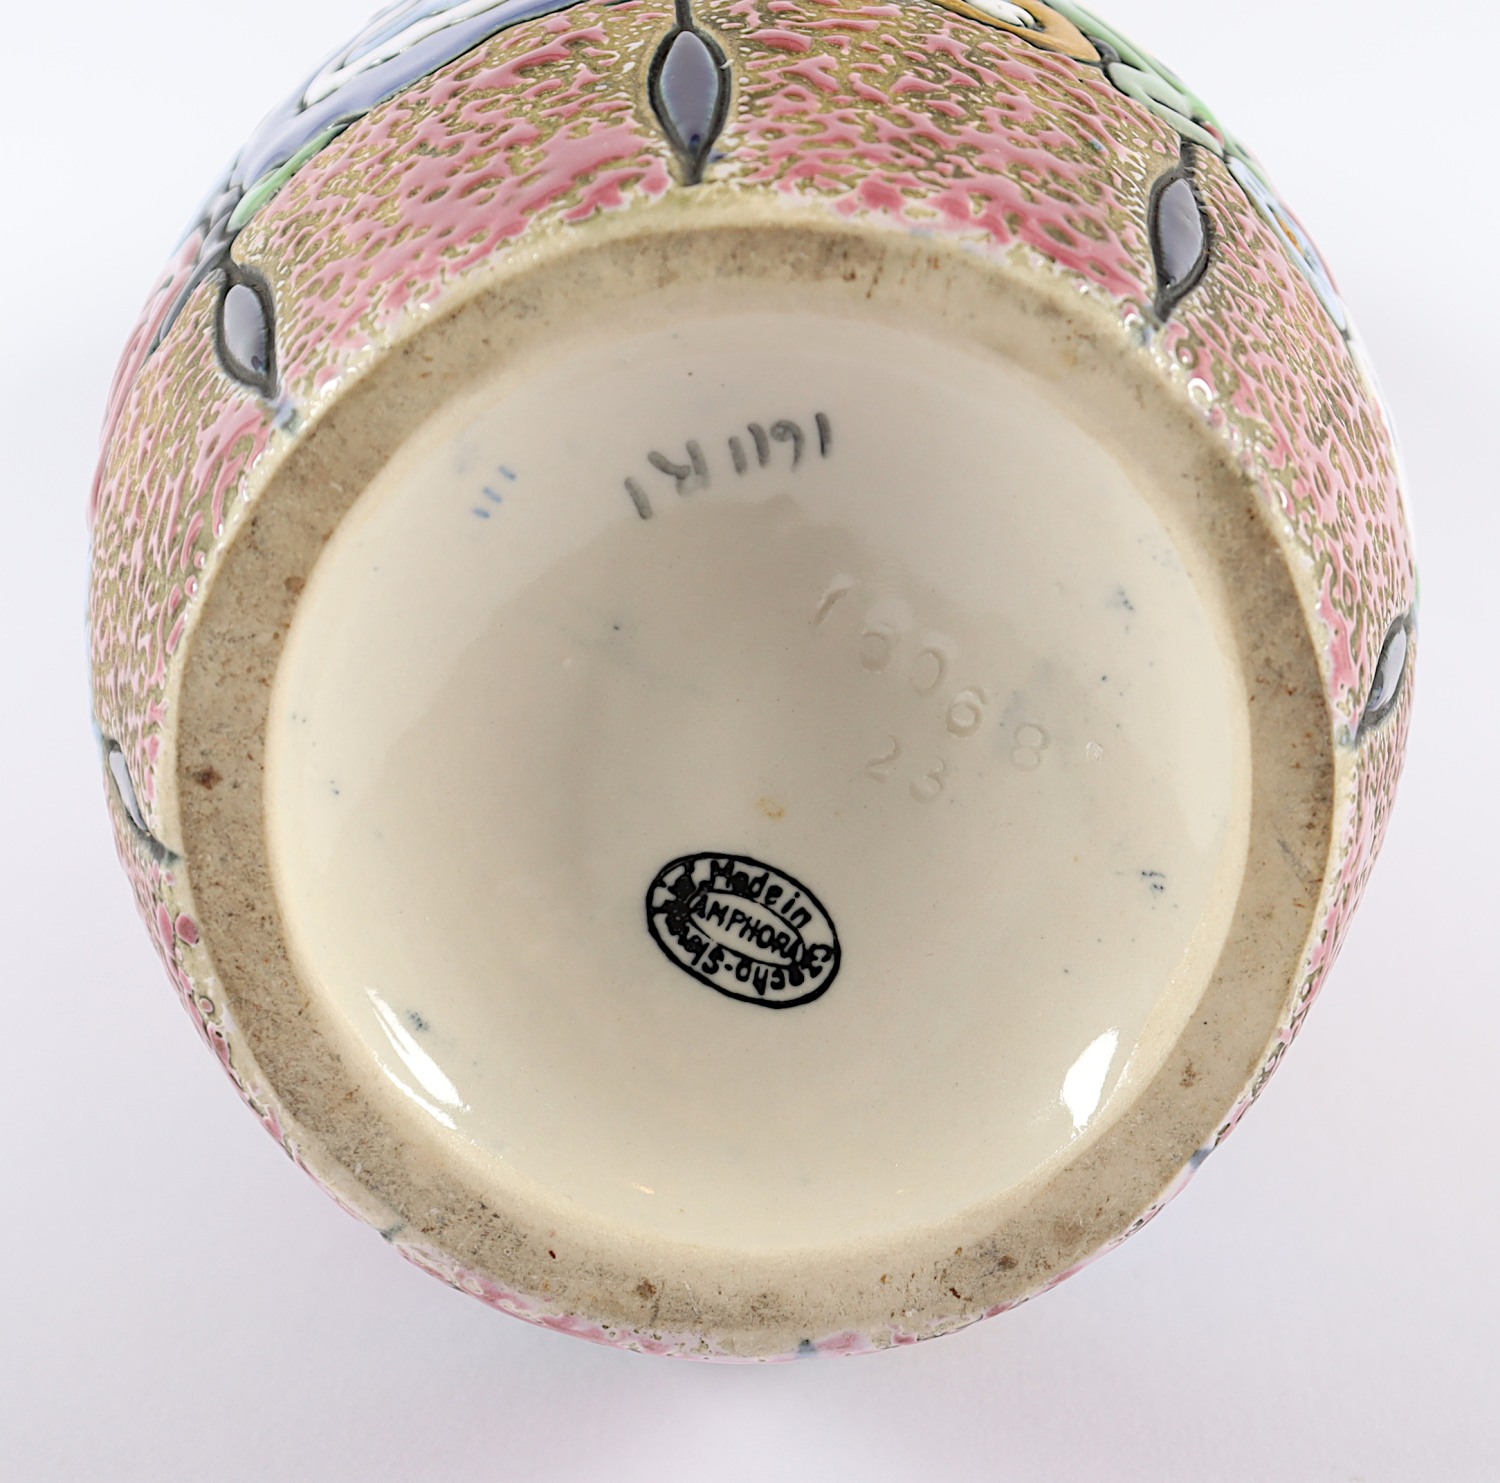 JUGENDSTIL-VASE, Keramik, polychrom - Image 2 of 2